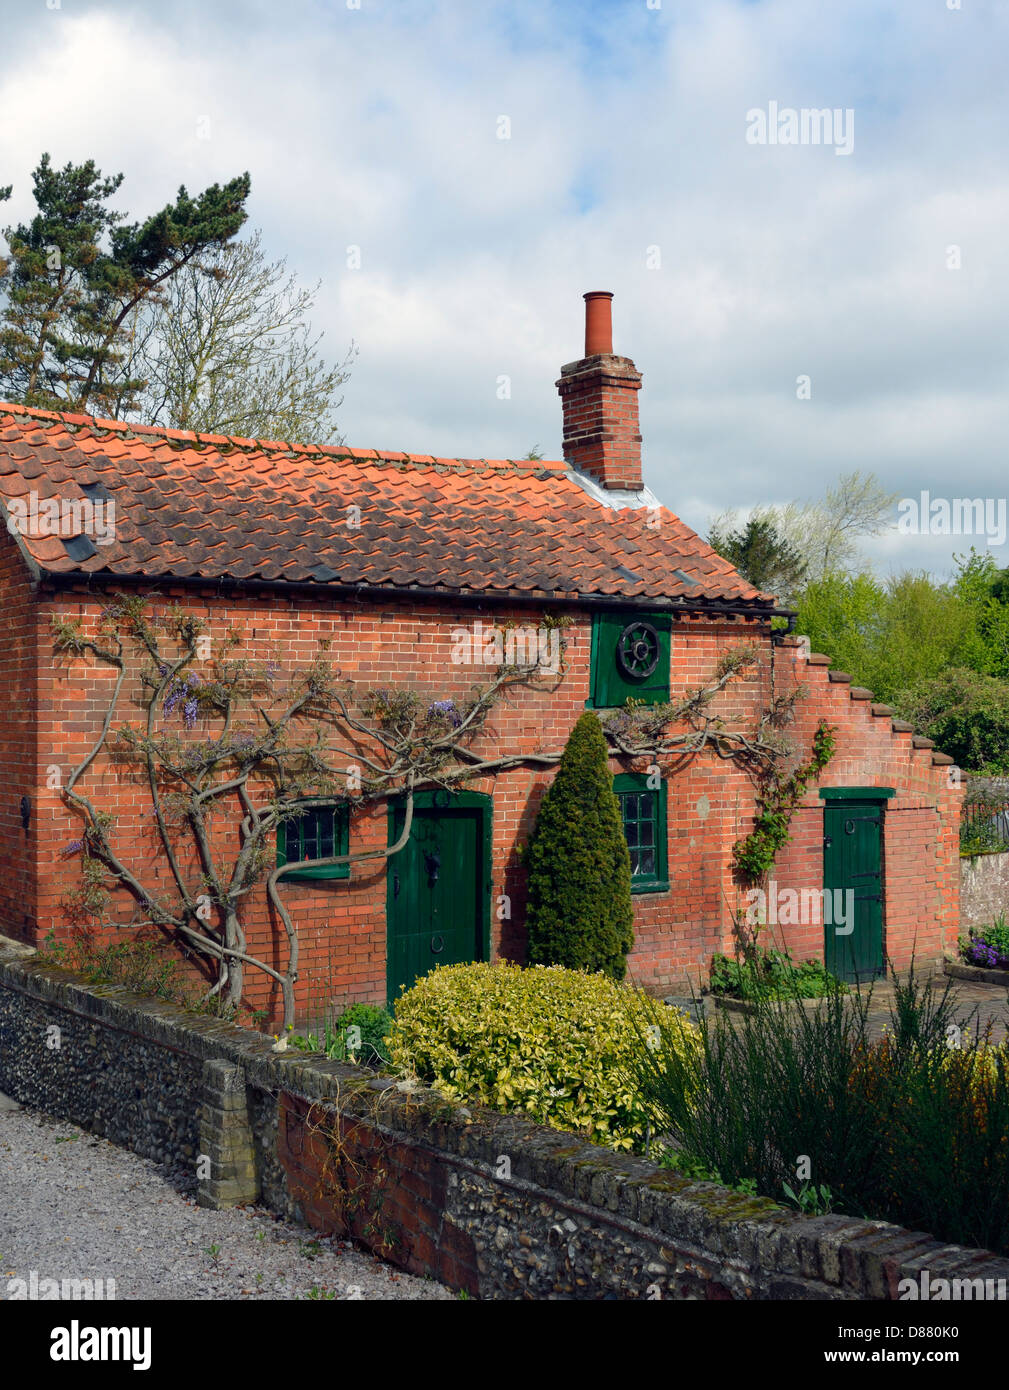 Cottage en brique rouge pittoresque. Wrentham, Suffolk, Angleterre, Royaume-Uni, Europe. Banque D'Images